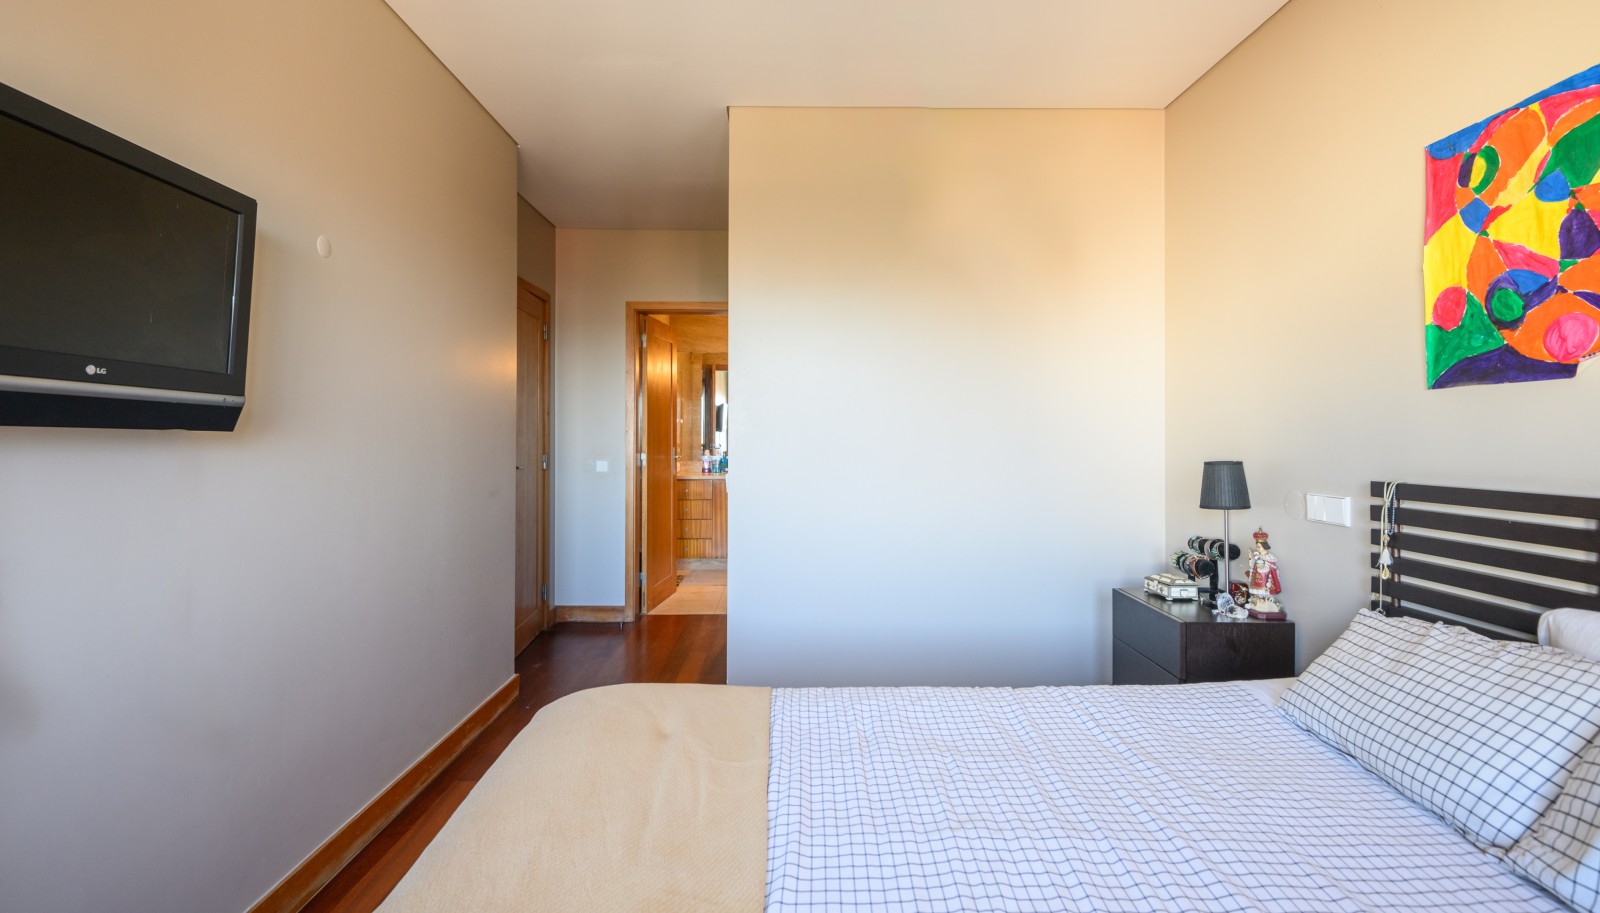 Appartement de 4 chambres avec piscine chauffée, à vendre, Matosinhos, Portugal_247510